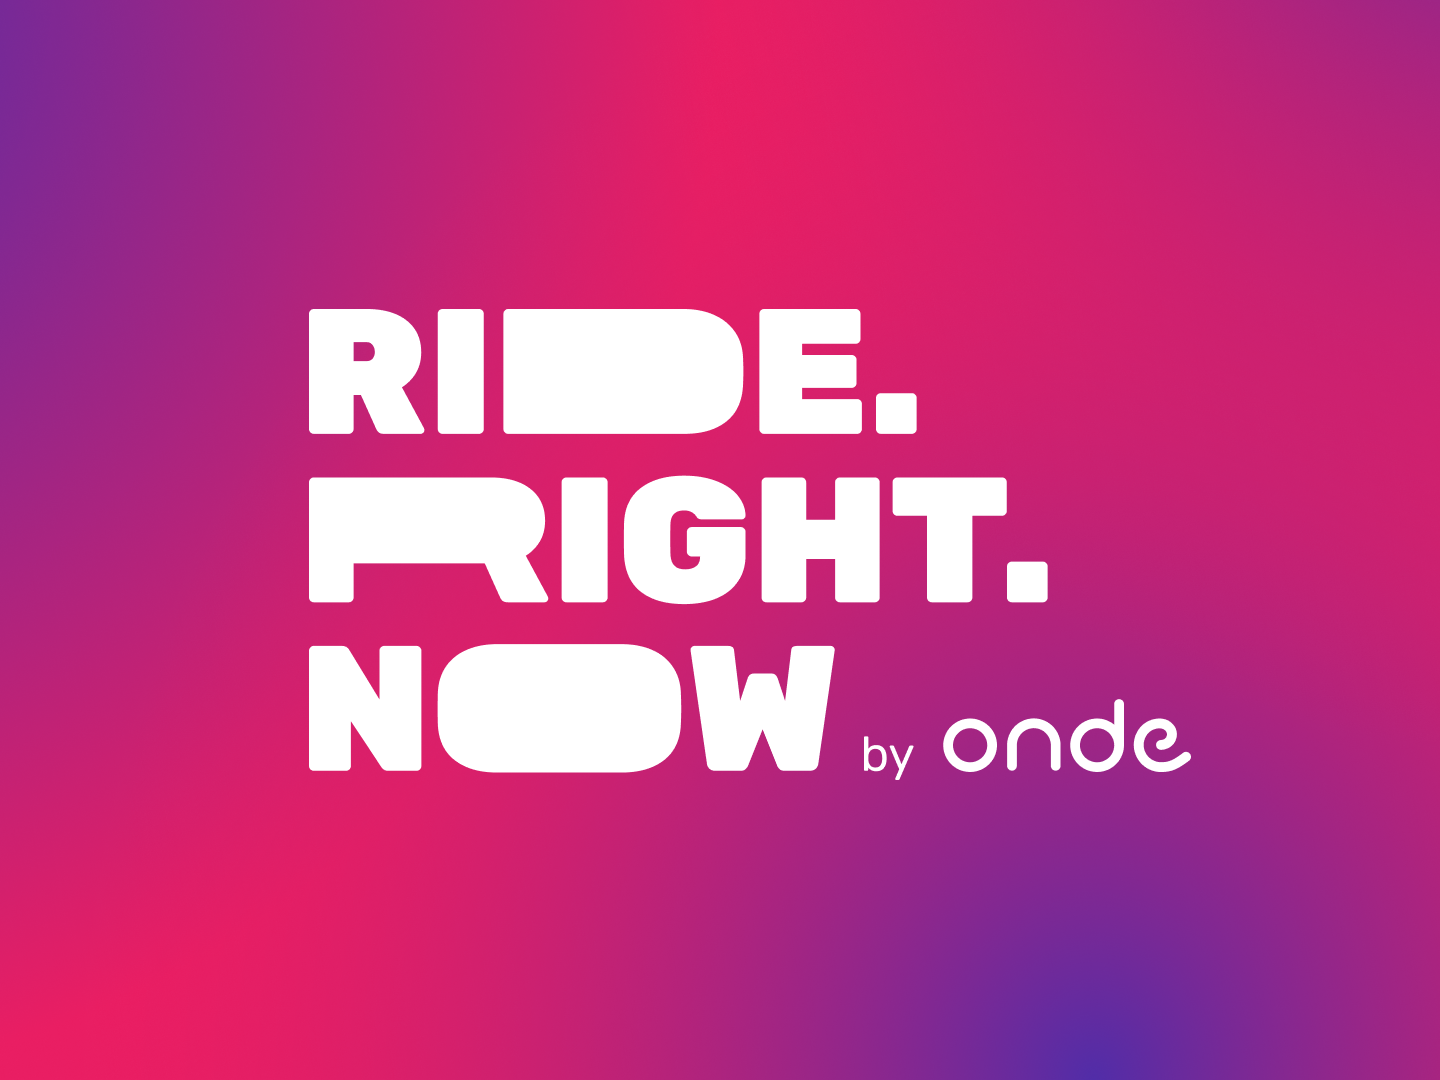 Right ride